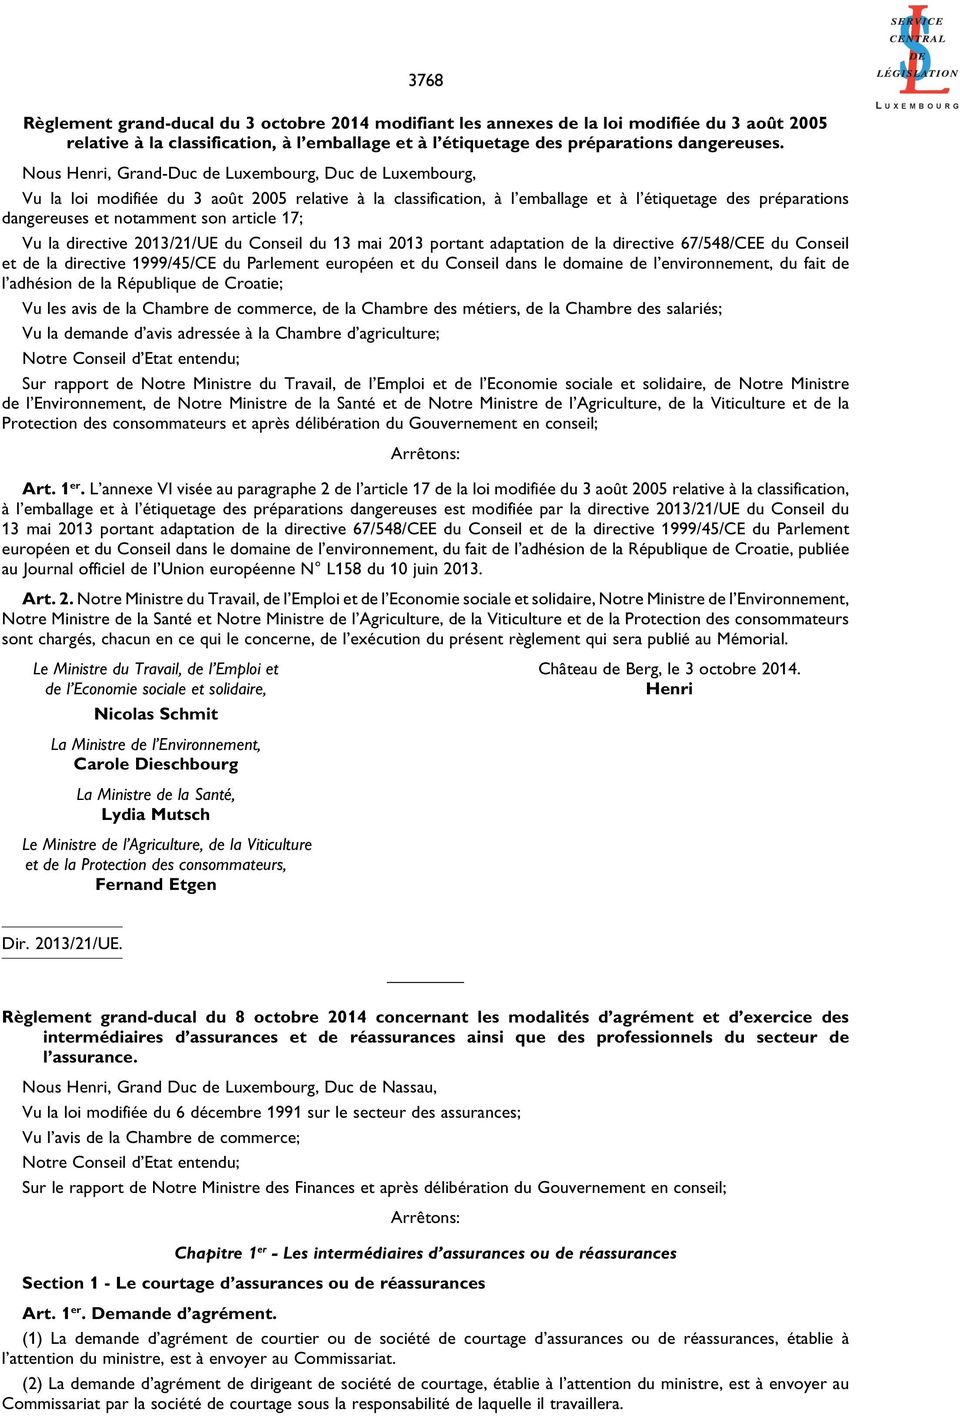 article 17; Vu la directive 2013/21/UE du Conseil du 13 mai 2013 portant adaptation de la directive 67/548/CEE du Conseil et de la directive 1999/45/CE du Parlement européen et du Conseil dans le